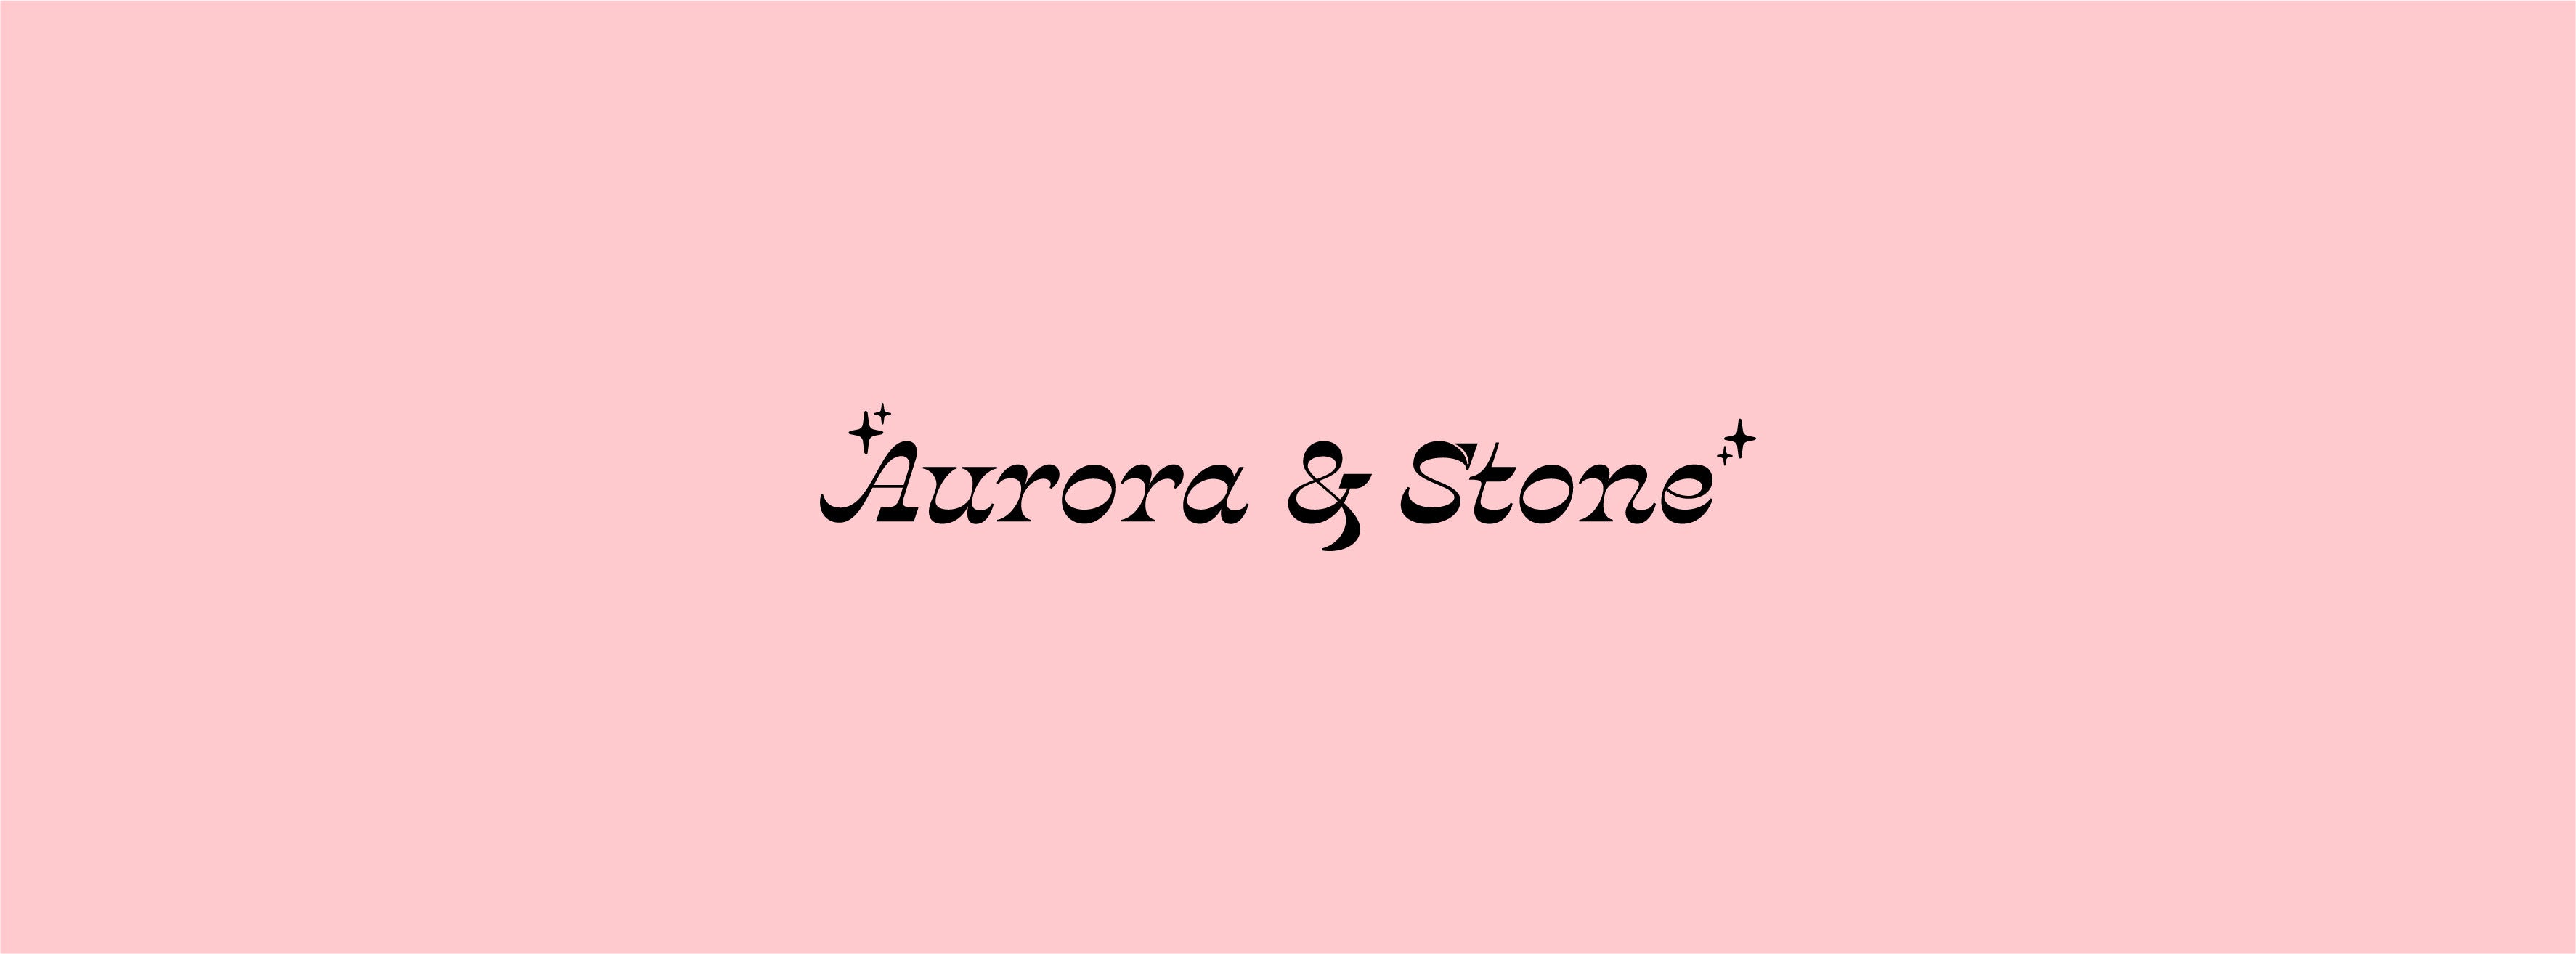 Aurora and Stone